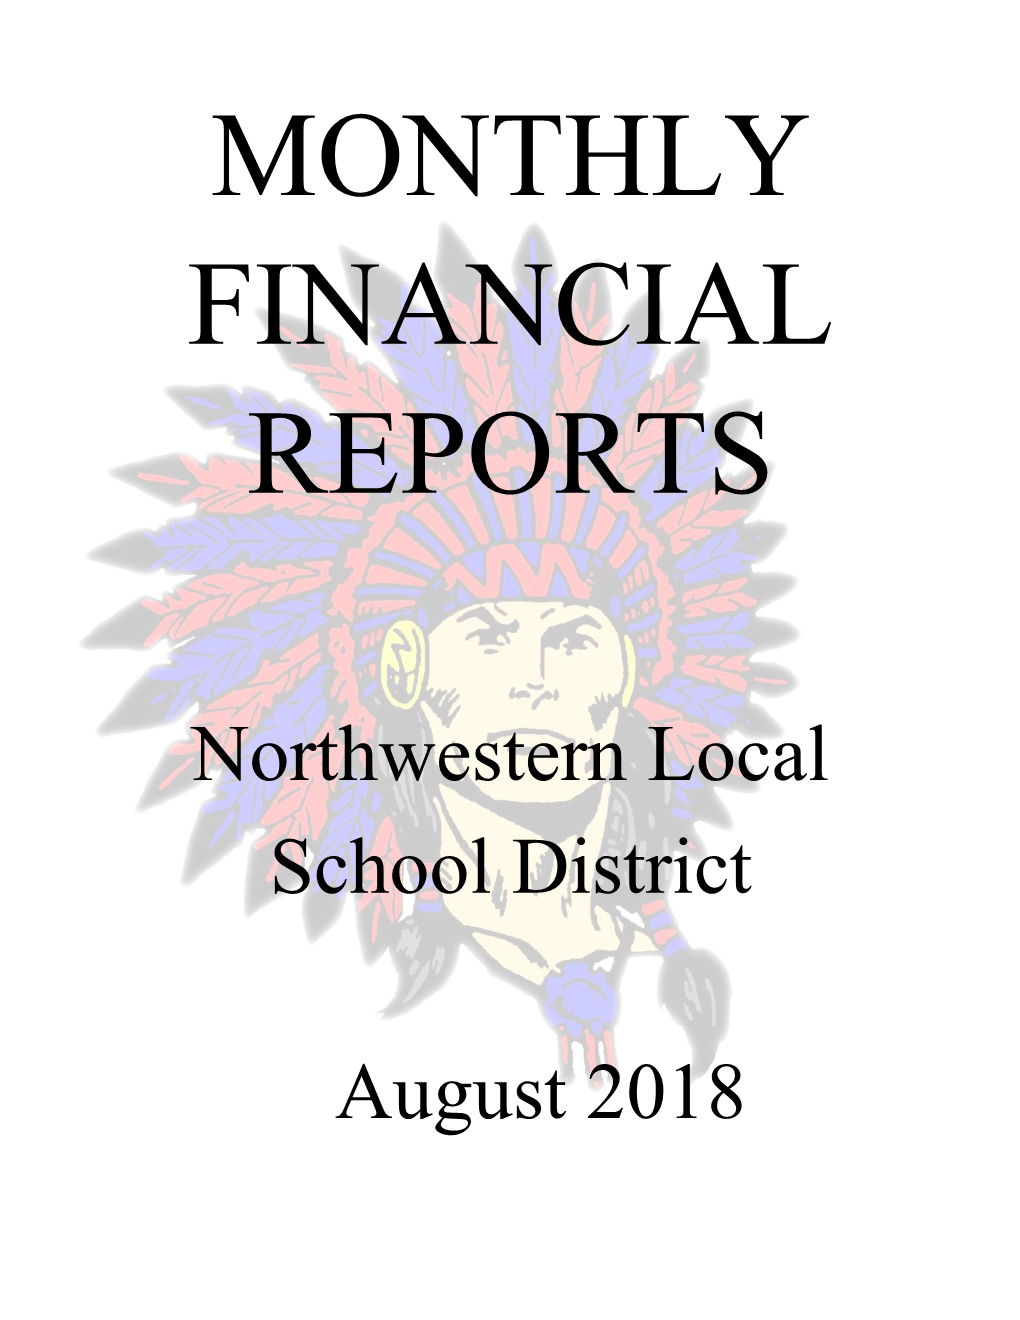 Northwestern Local School District August 2018